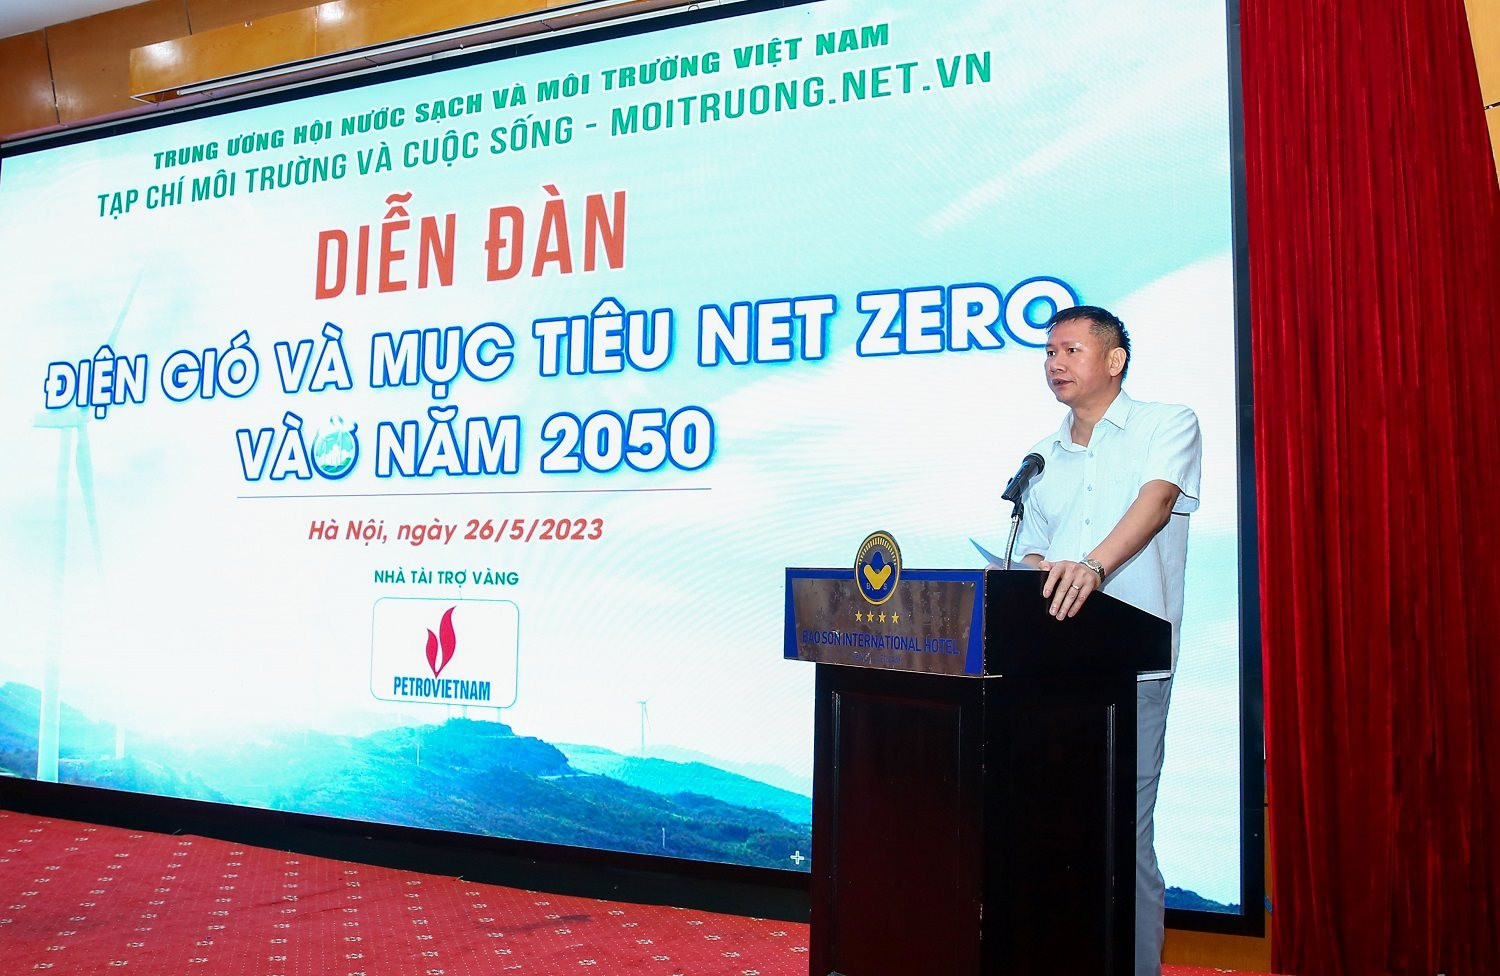 Phát triển điện gió hướng tới mục tiêu Net Zero vào năm 2050 - Ảnh 3.